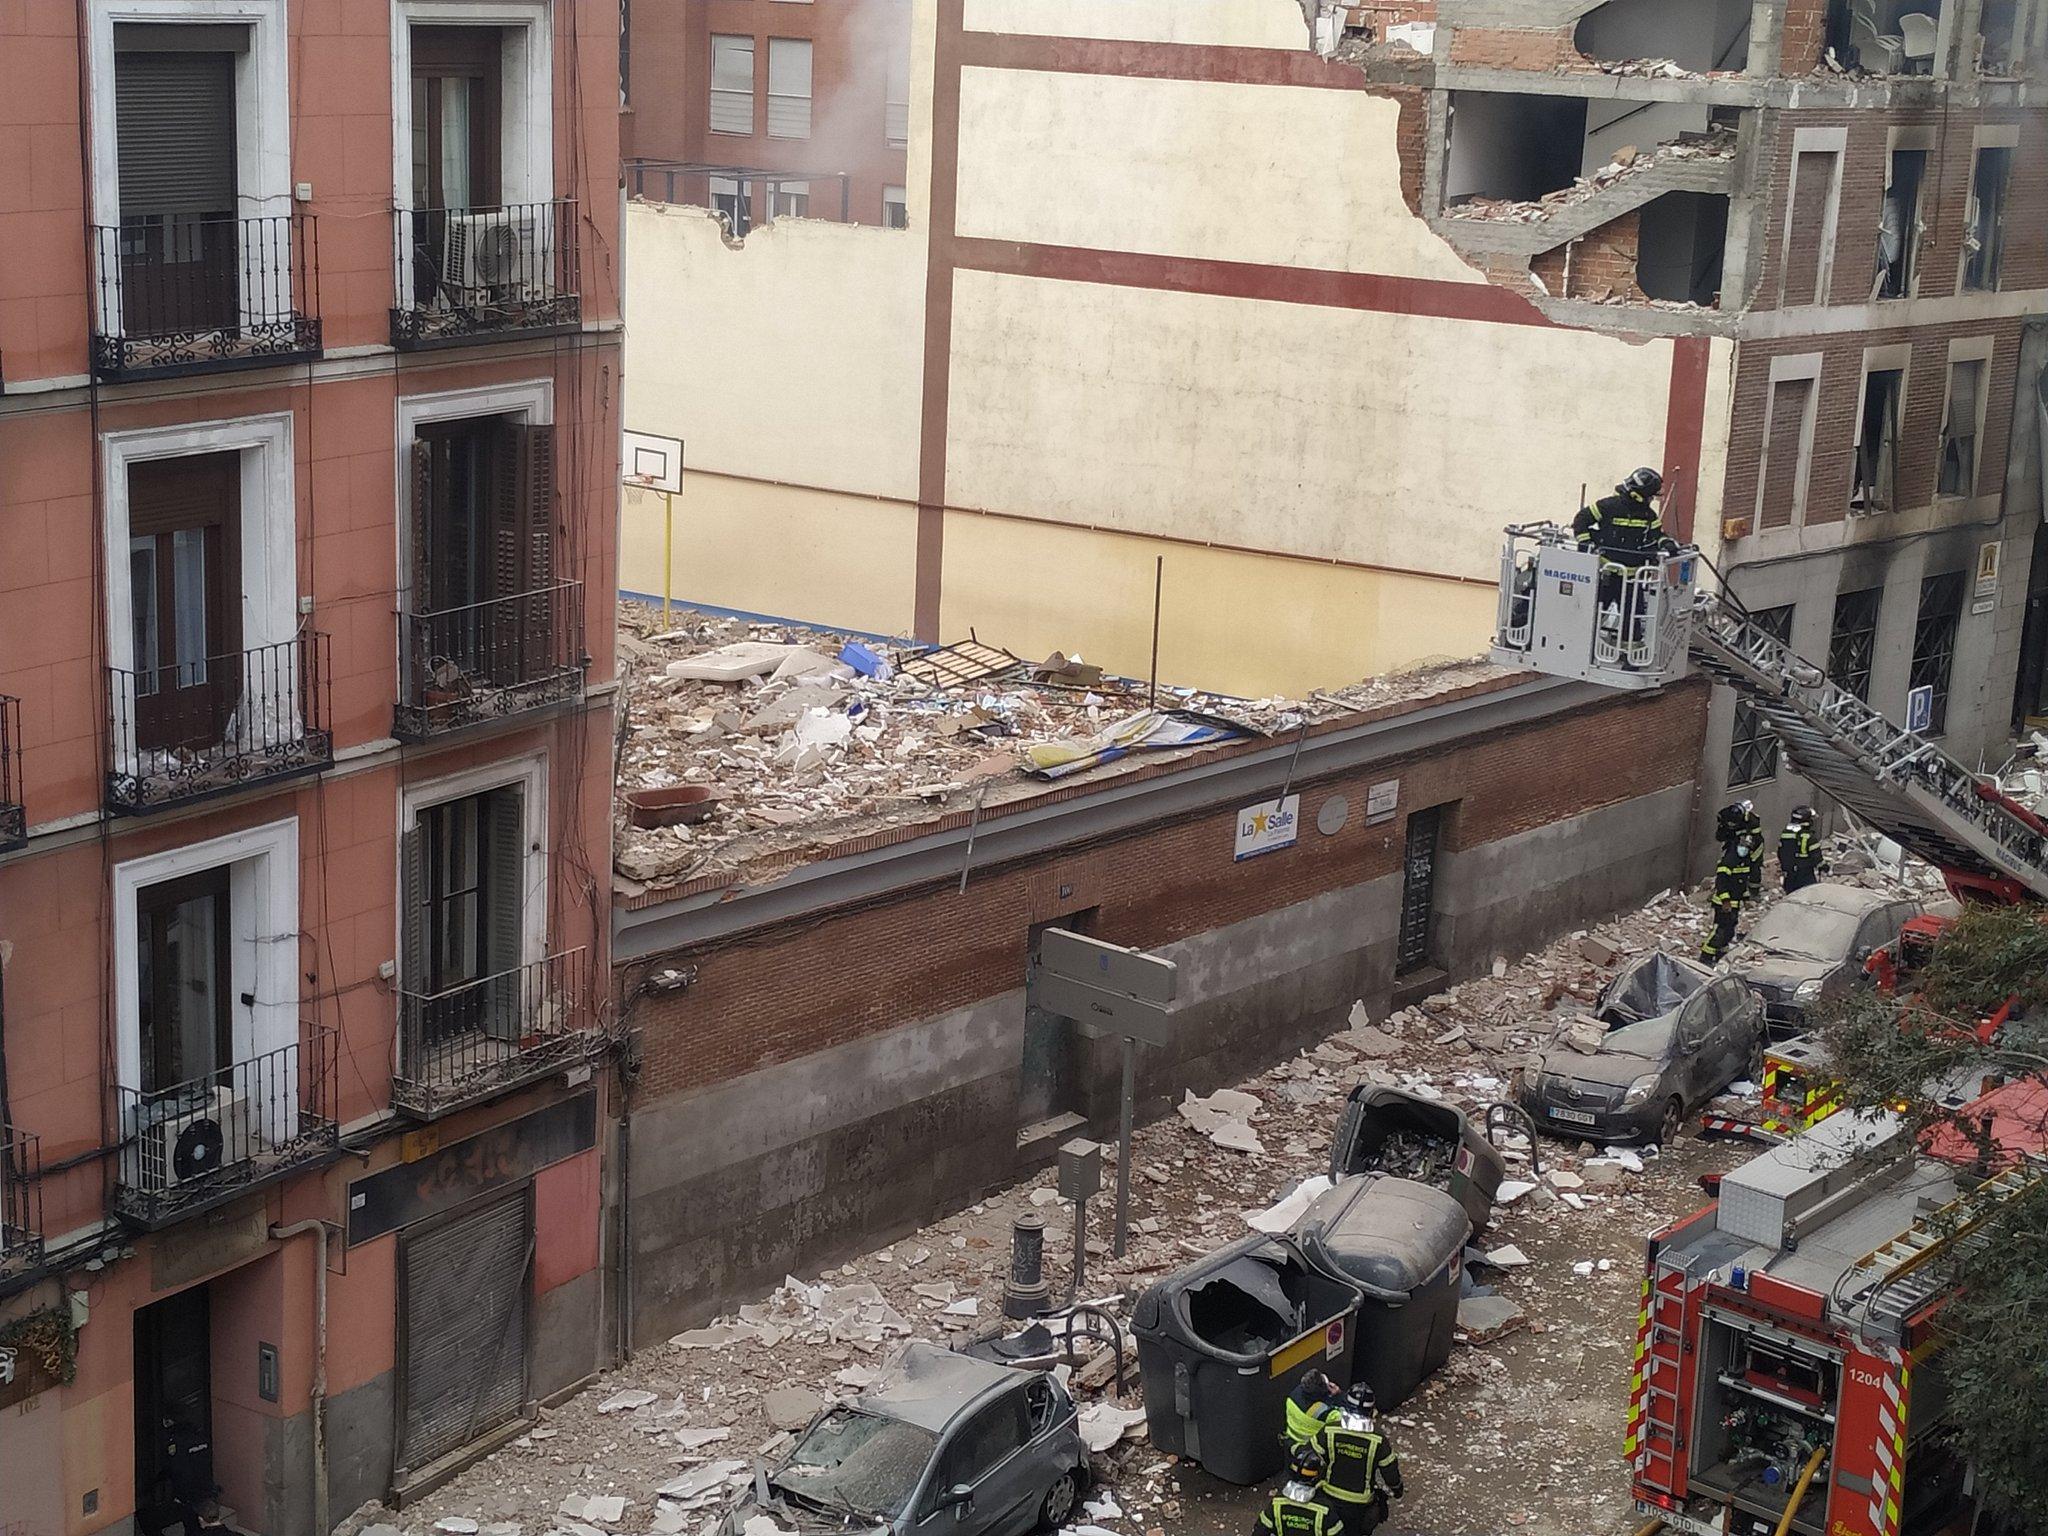 İspanyanın başkenti Madrid’de patlama : 2 ölü